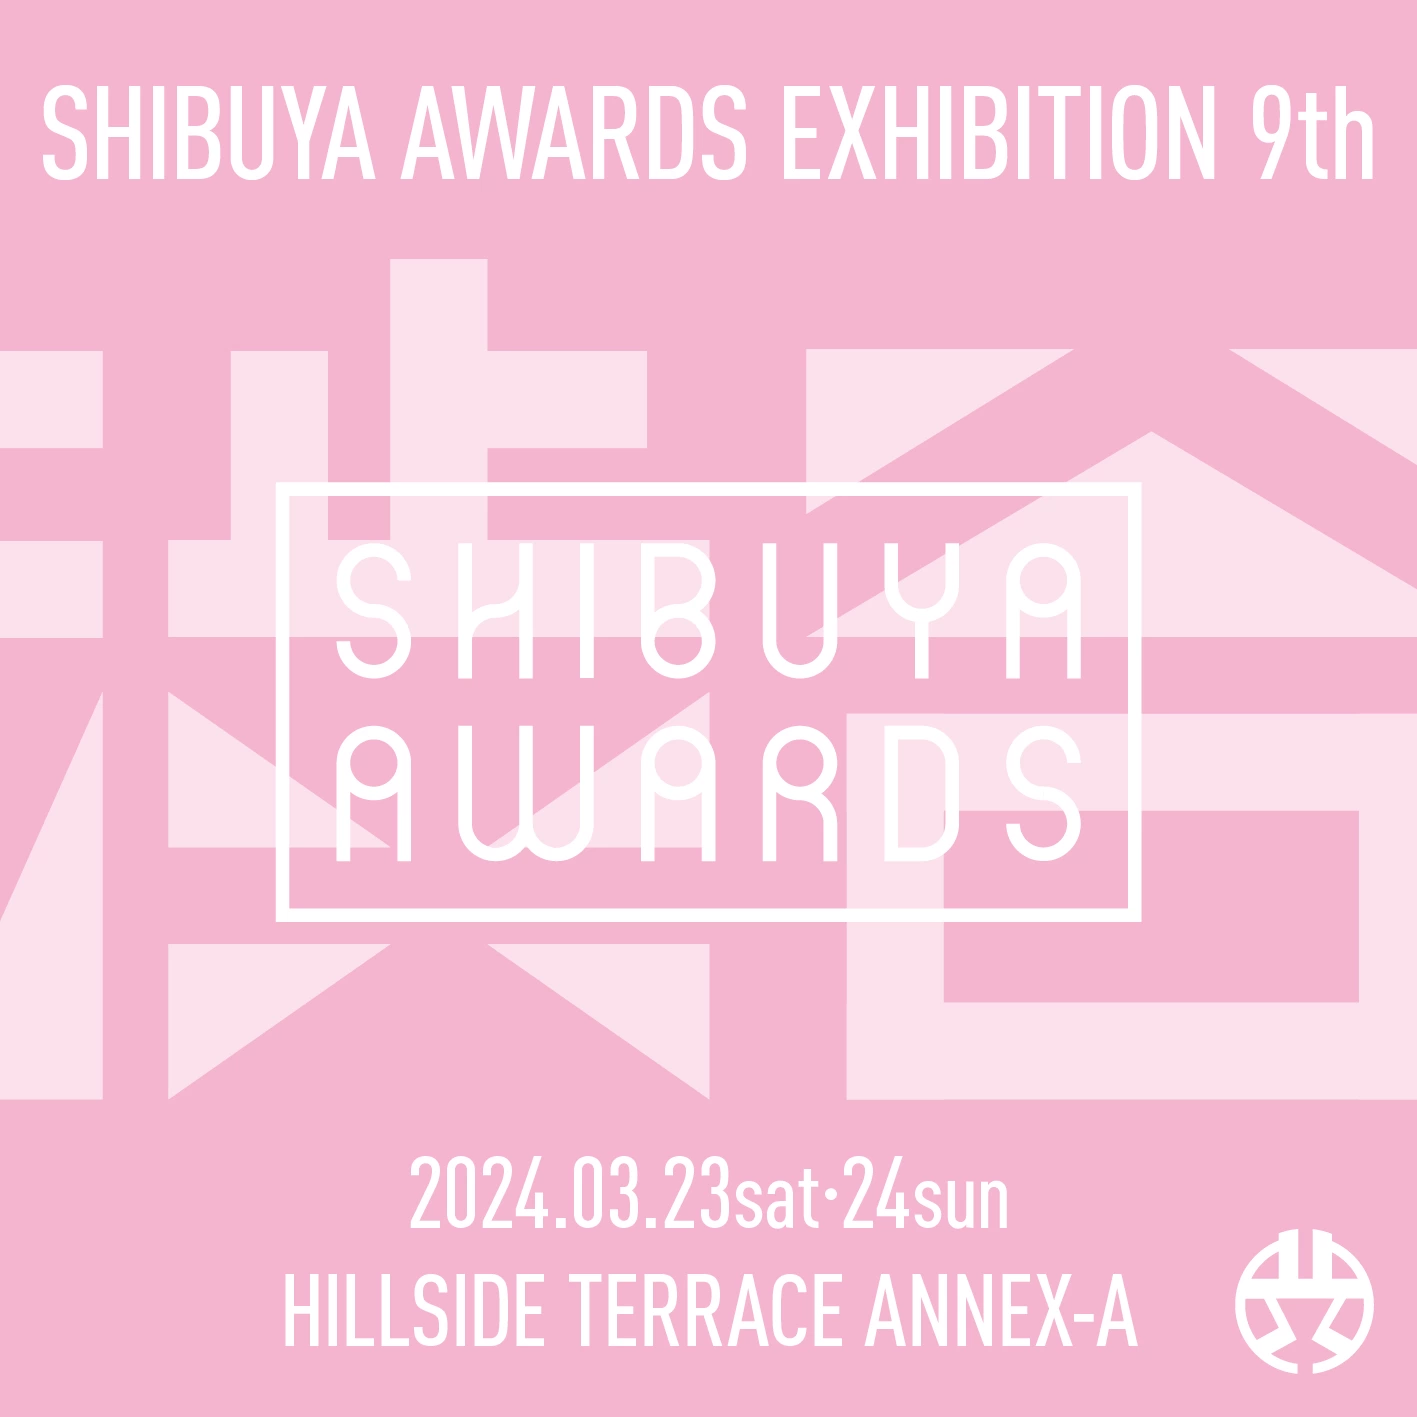 SHIBUYA AWARDS EXHIBITION 9th